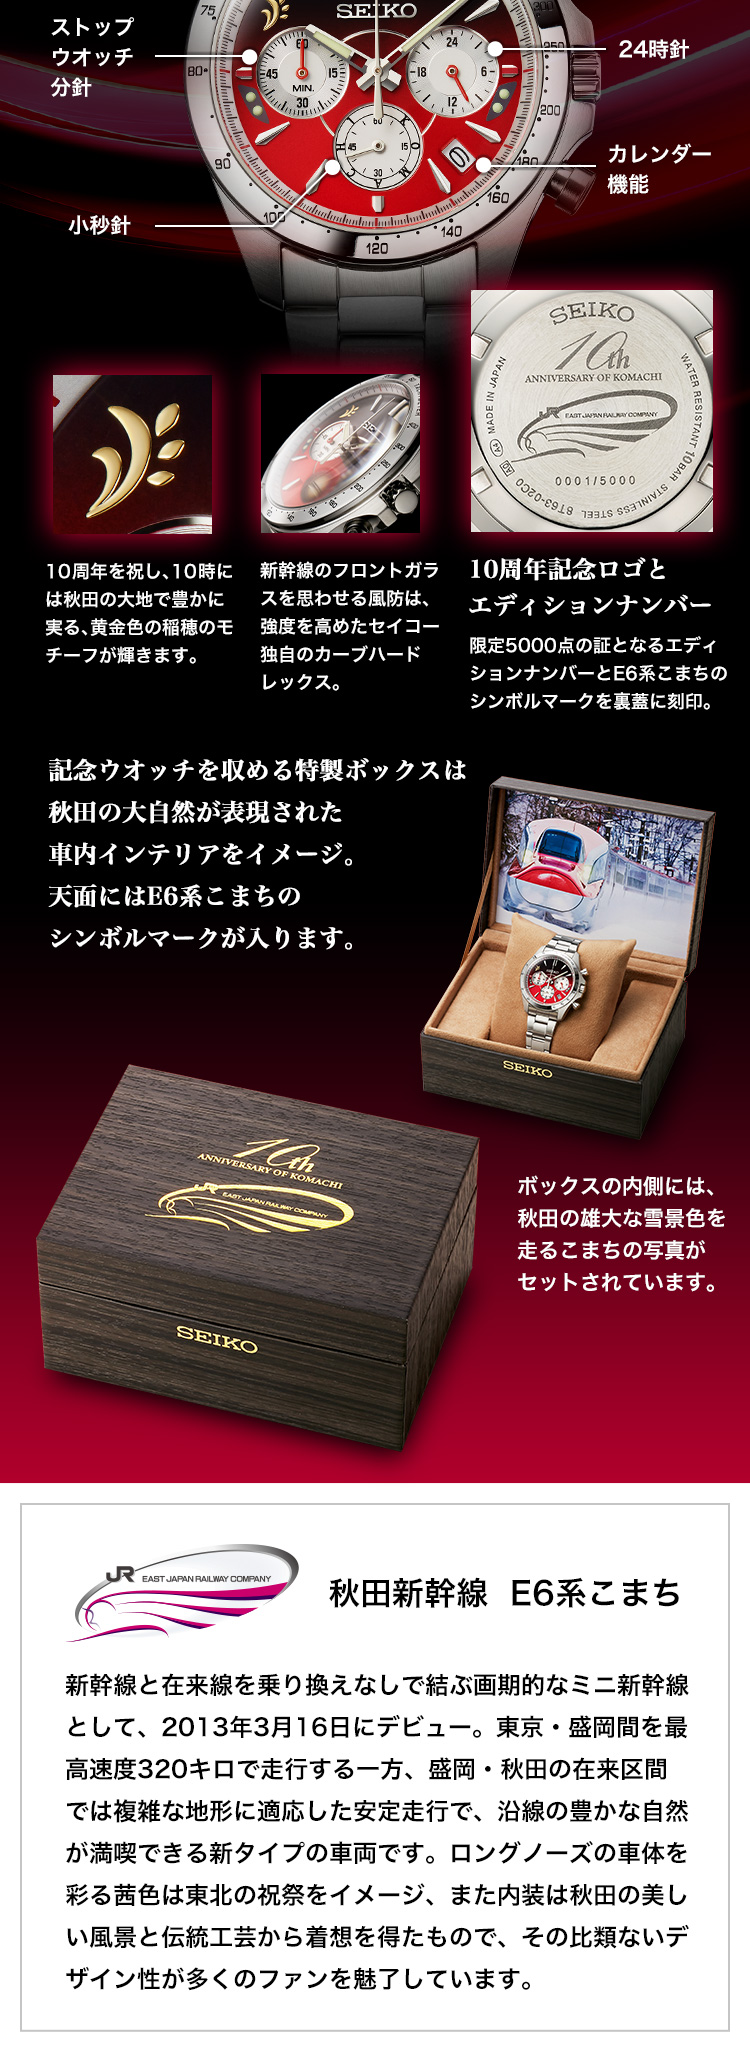 記念ウオッチを収める特製ボックスは秋田の大自然が表現された車内インテリアをイメージ。天面にはE6系こまちのシンボルマークが入ります。